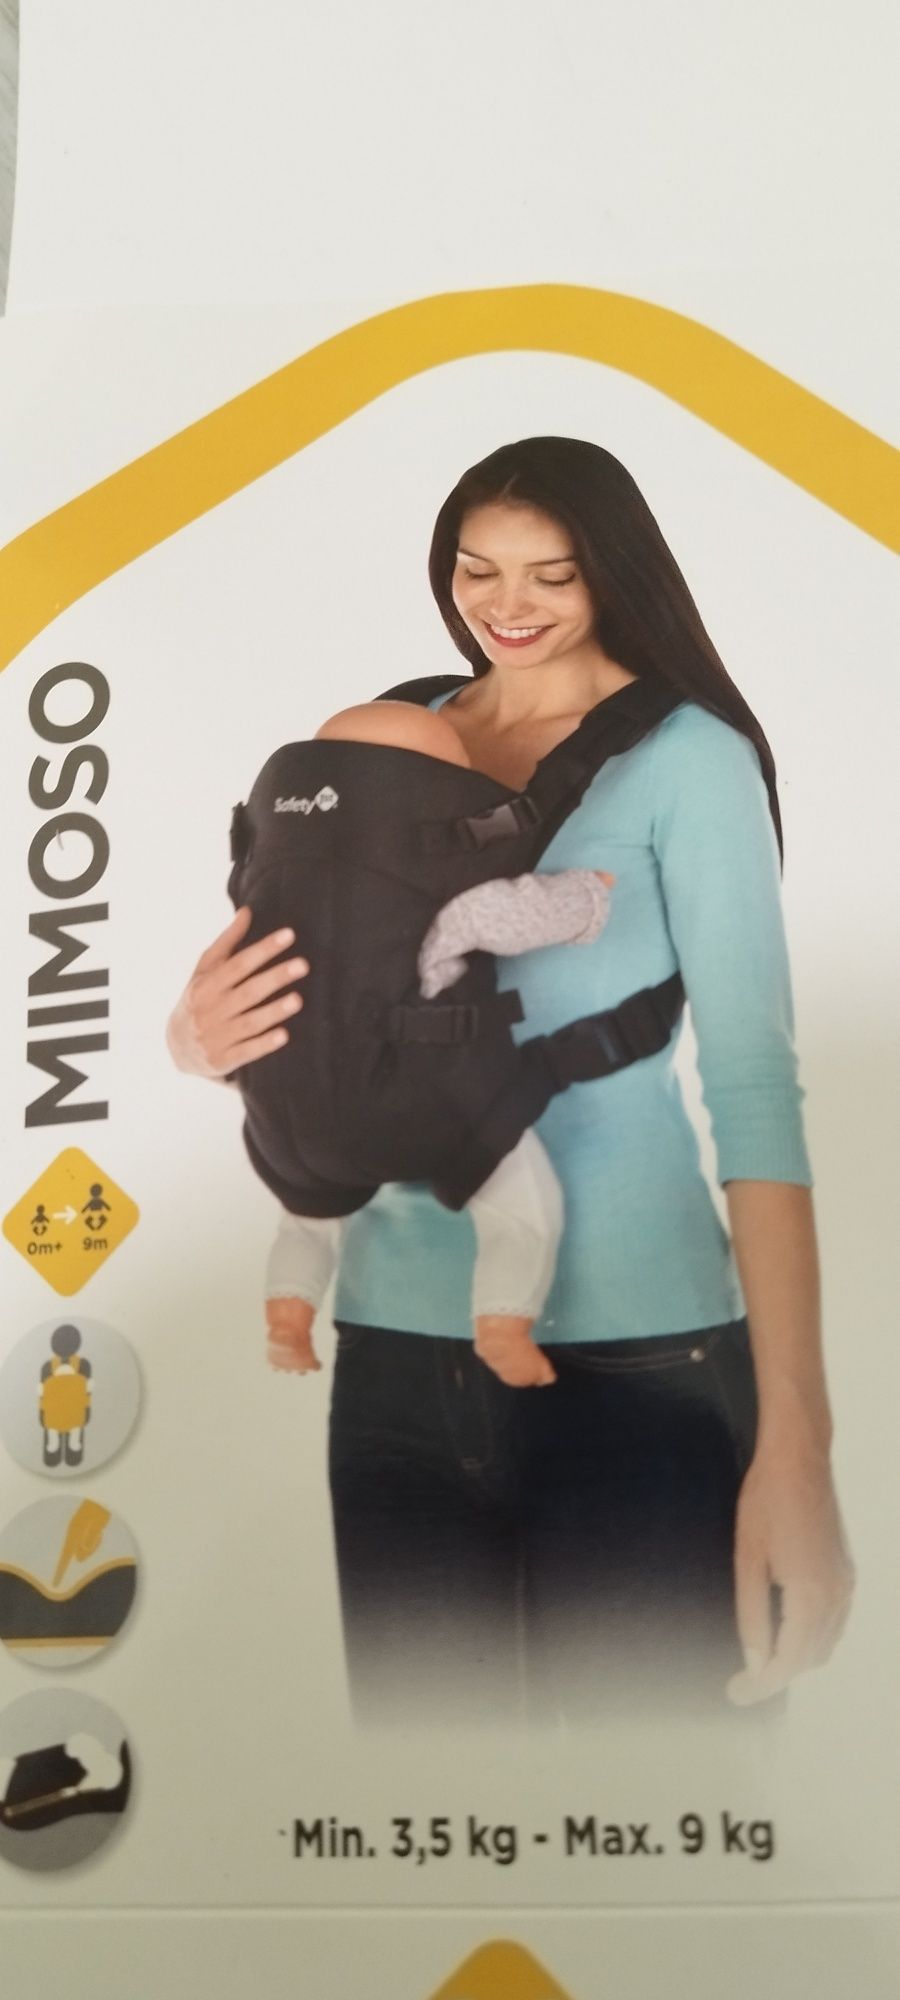 Nosidełko do noszenia dziecka jak plecak Safety 1st